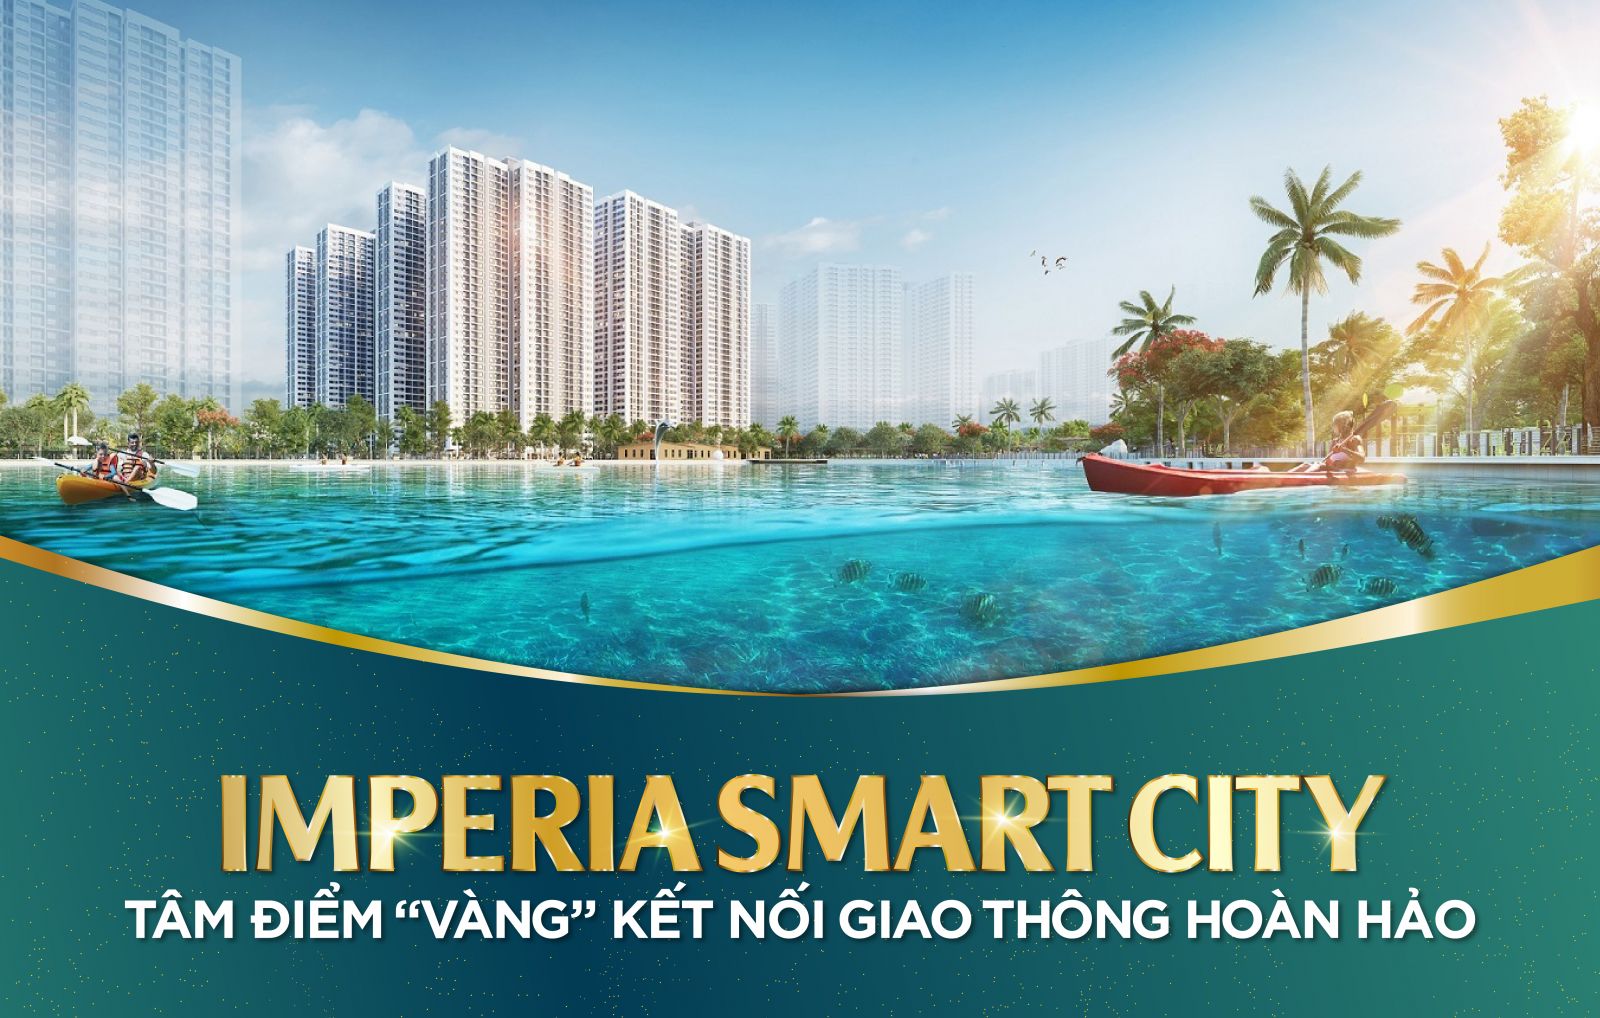 Imperia Smart City - Tâm điểm “vàng“ kết nối giao thông hoàn hảo